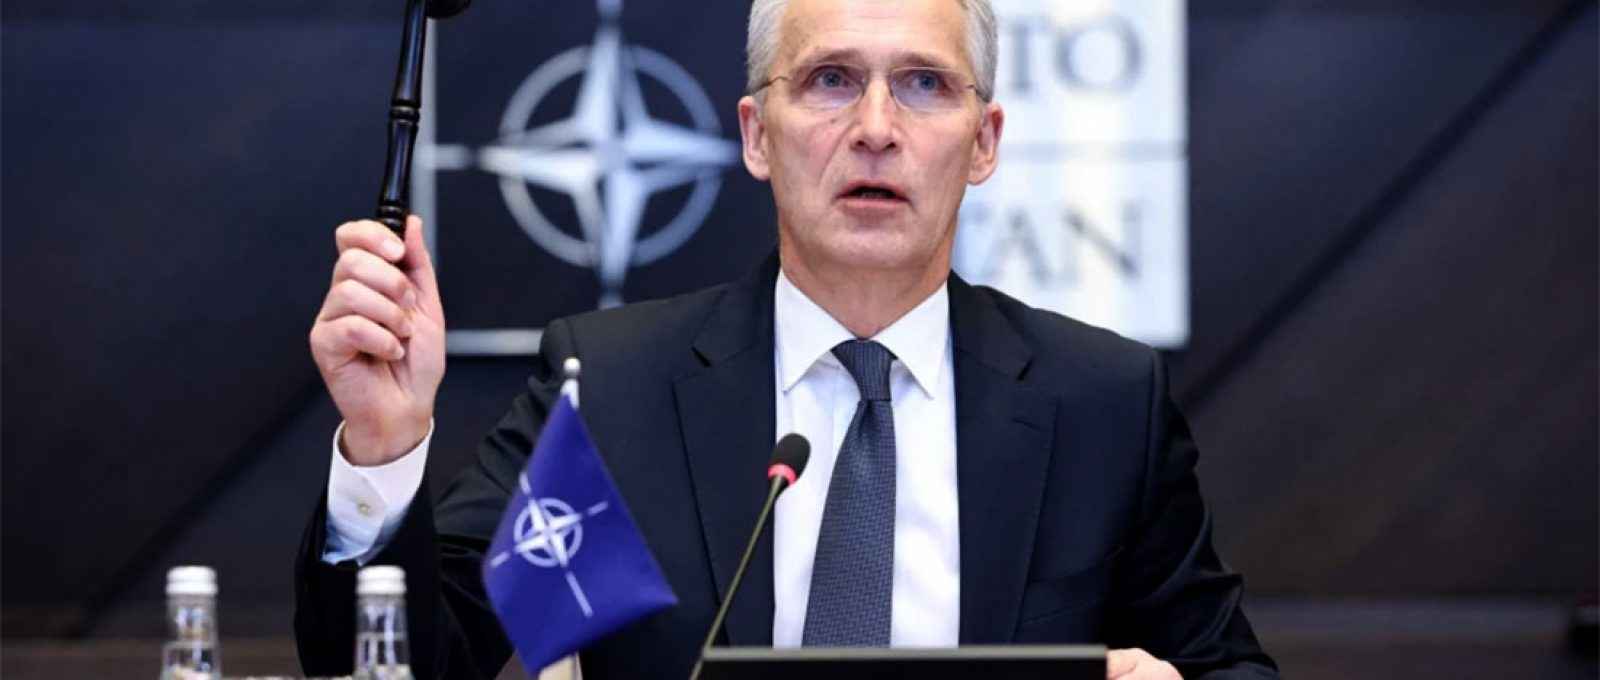 O secretário-geral da OTAN, Jens Stoltenberg, dá início à segunda mesa redonda no primeiro dia de uma reunião dos Ministros da Defesa da OTAN em Bruxelas, em 16 de março (Kenzo Tribouillard/AFP via Getty Images).